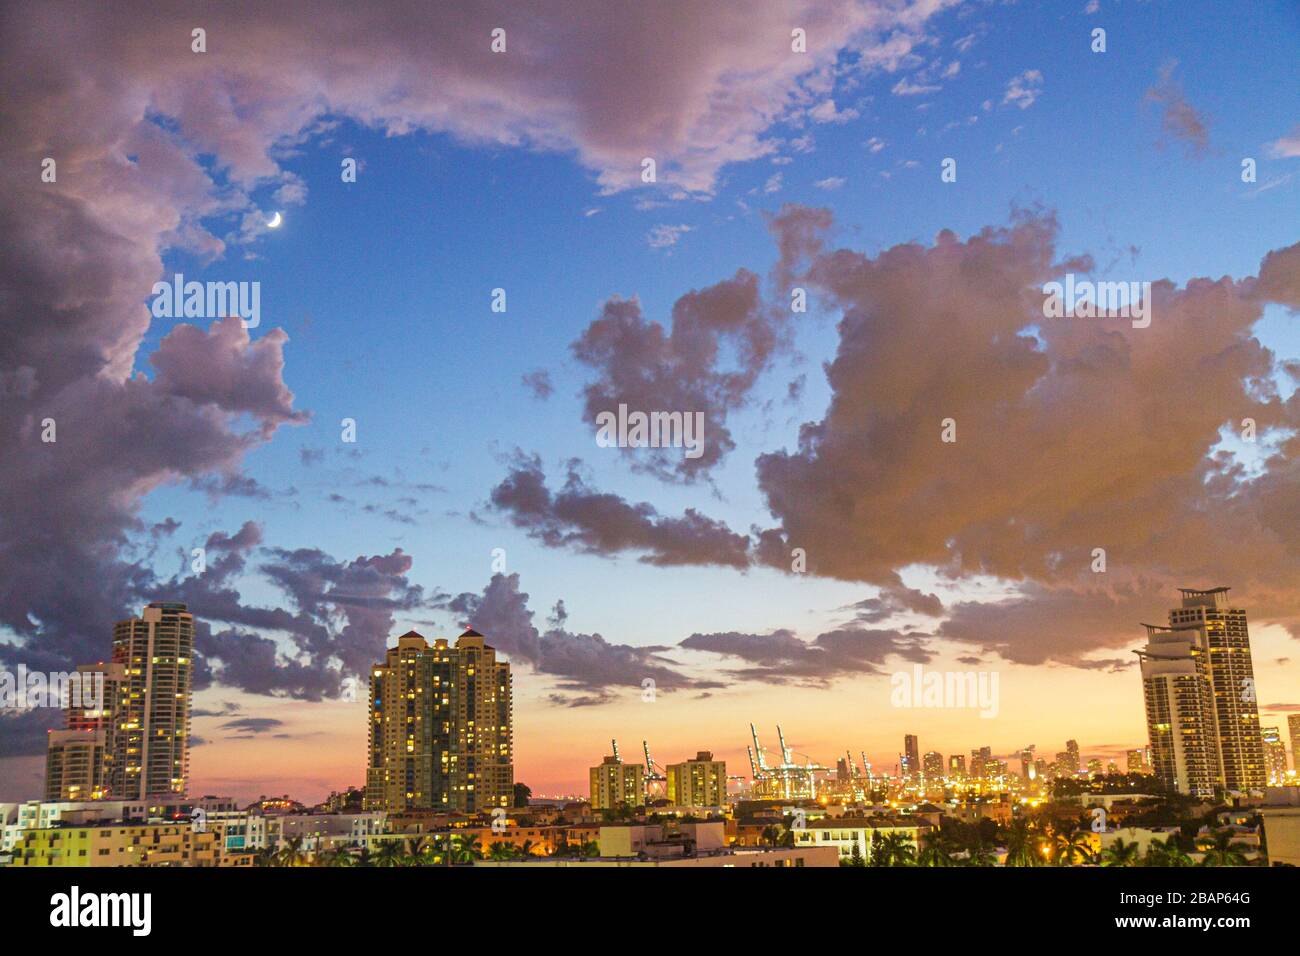 Miami Beach Florida,dusk,evening,moon,clouds,sky,high rise,condominiums,city skyline,FL111014046 Stock Photo